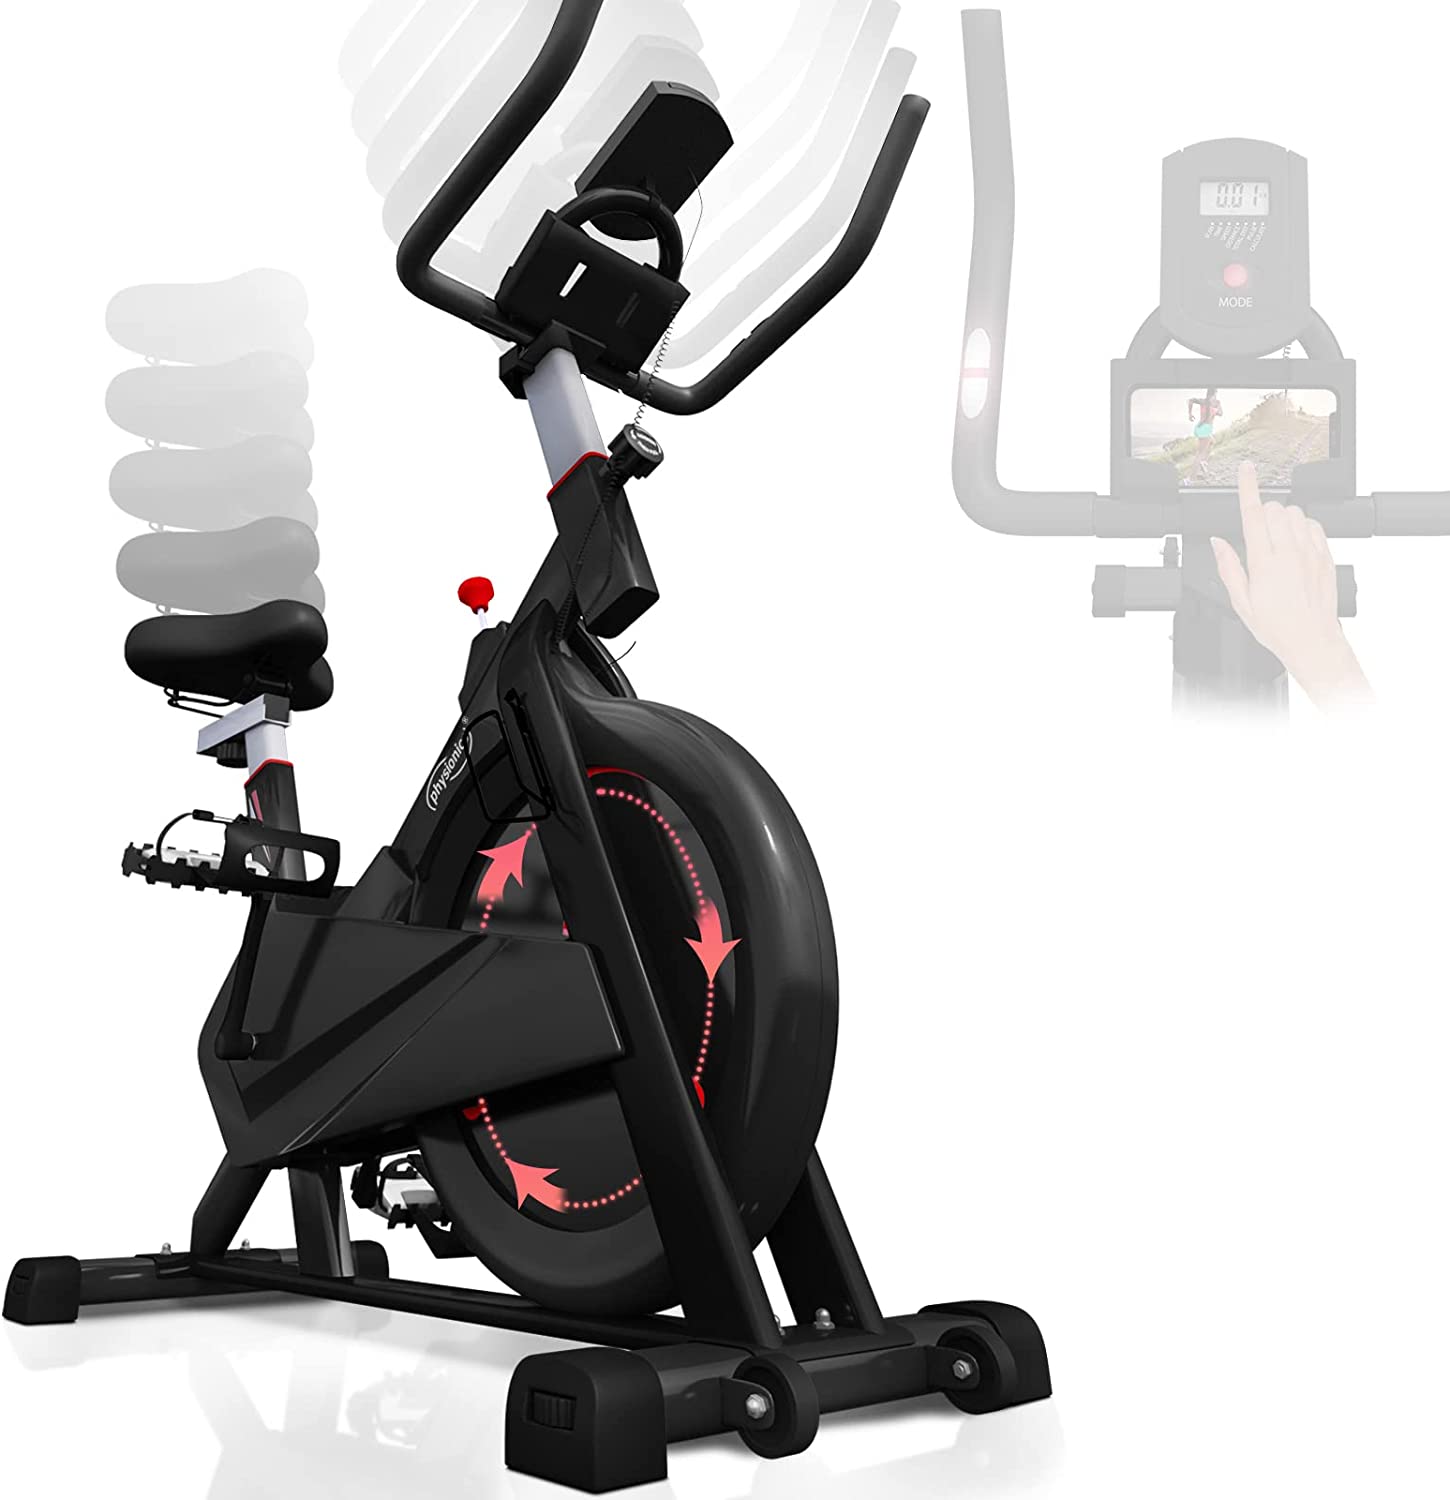 Hometrainer fiets – Fitnessfiets – Hometrainers fitness – 5 weerstandniveaus – Met hartslagmeter – Zwart